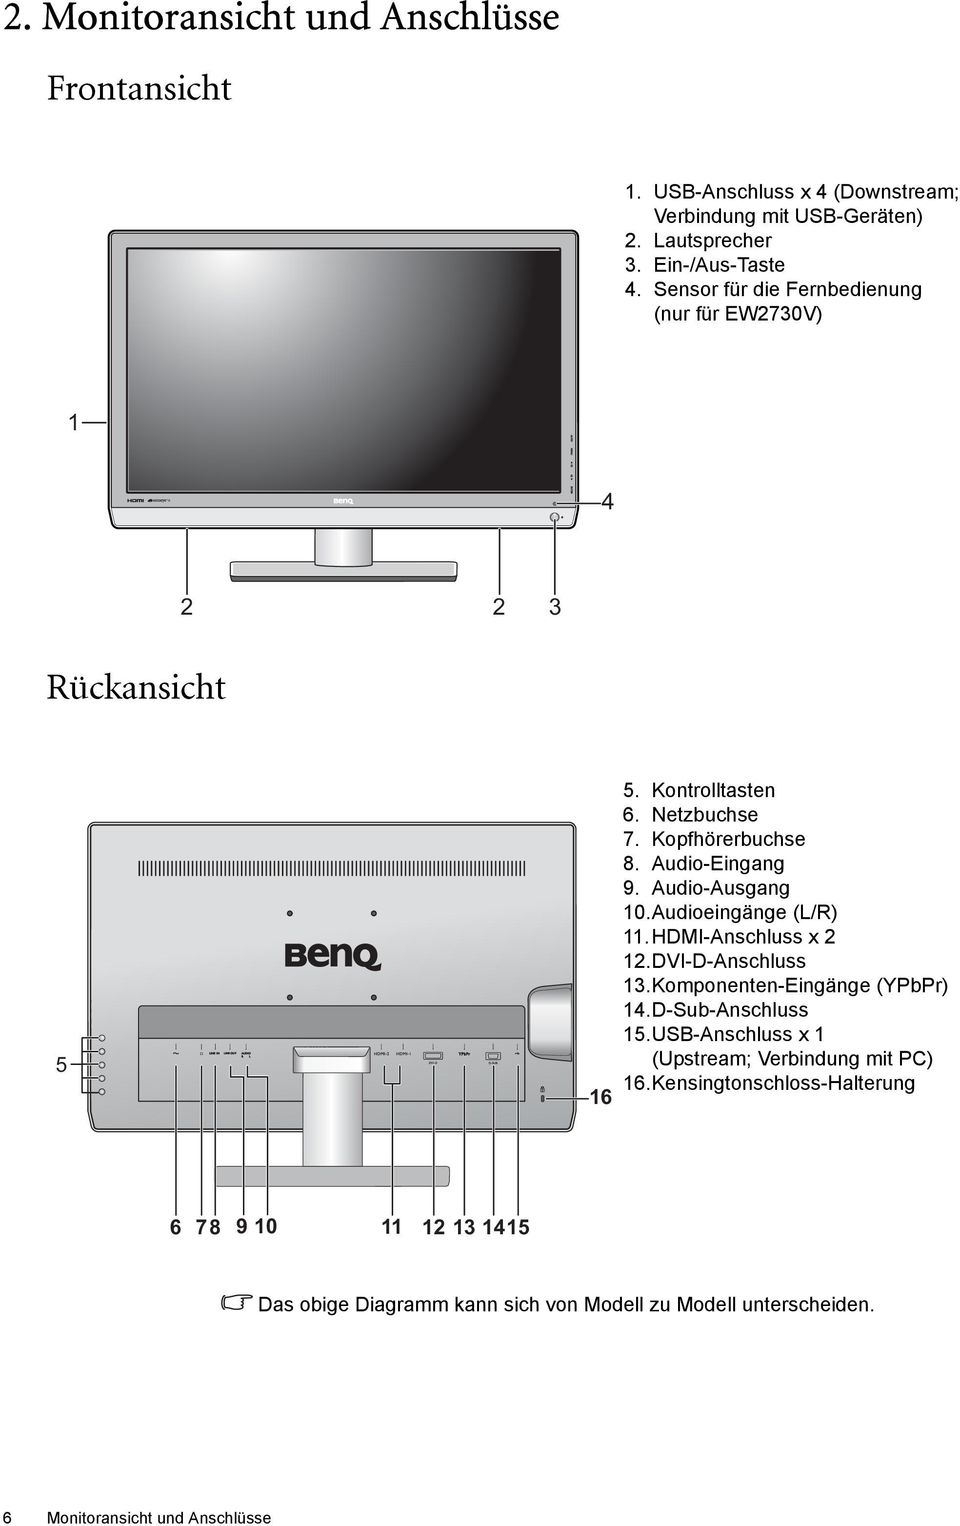 Audio-Ausgang 10.Audioeingänge (L/R) 11.HDMI-Anschluss x 2 12.DVI-D-Anschluss 13.Komponenten-Eingänge (YPbPr) 14.D-Sub-Anschluss 15.